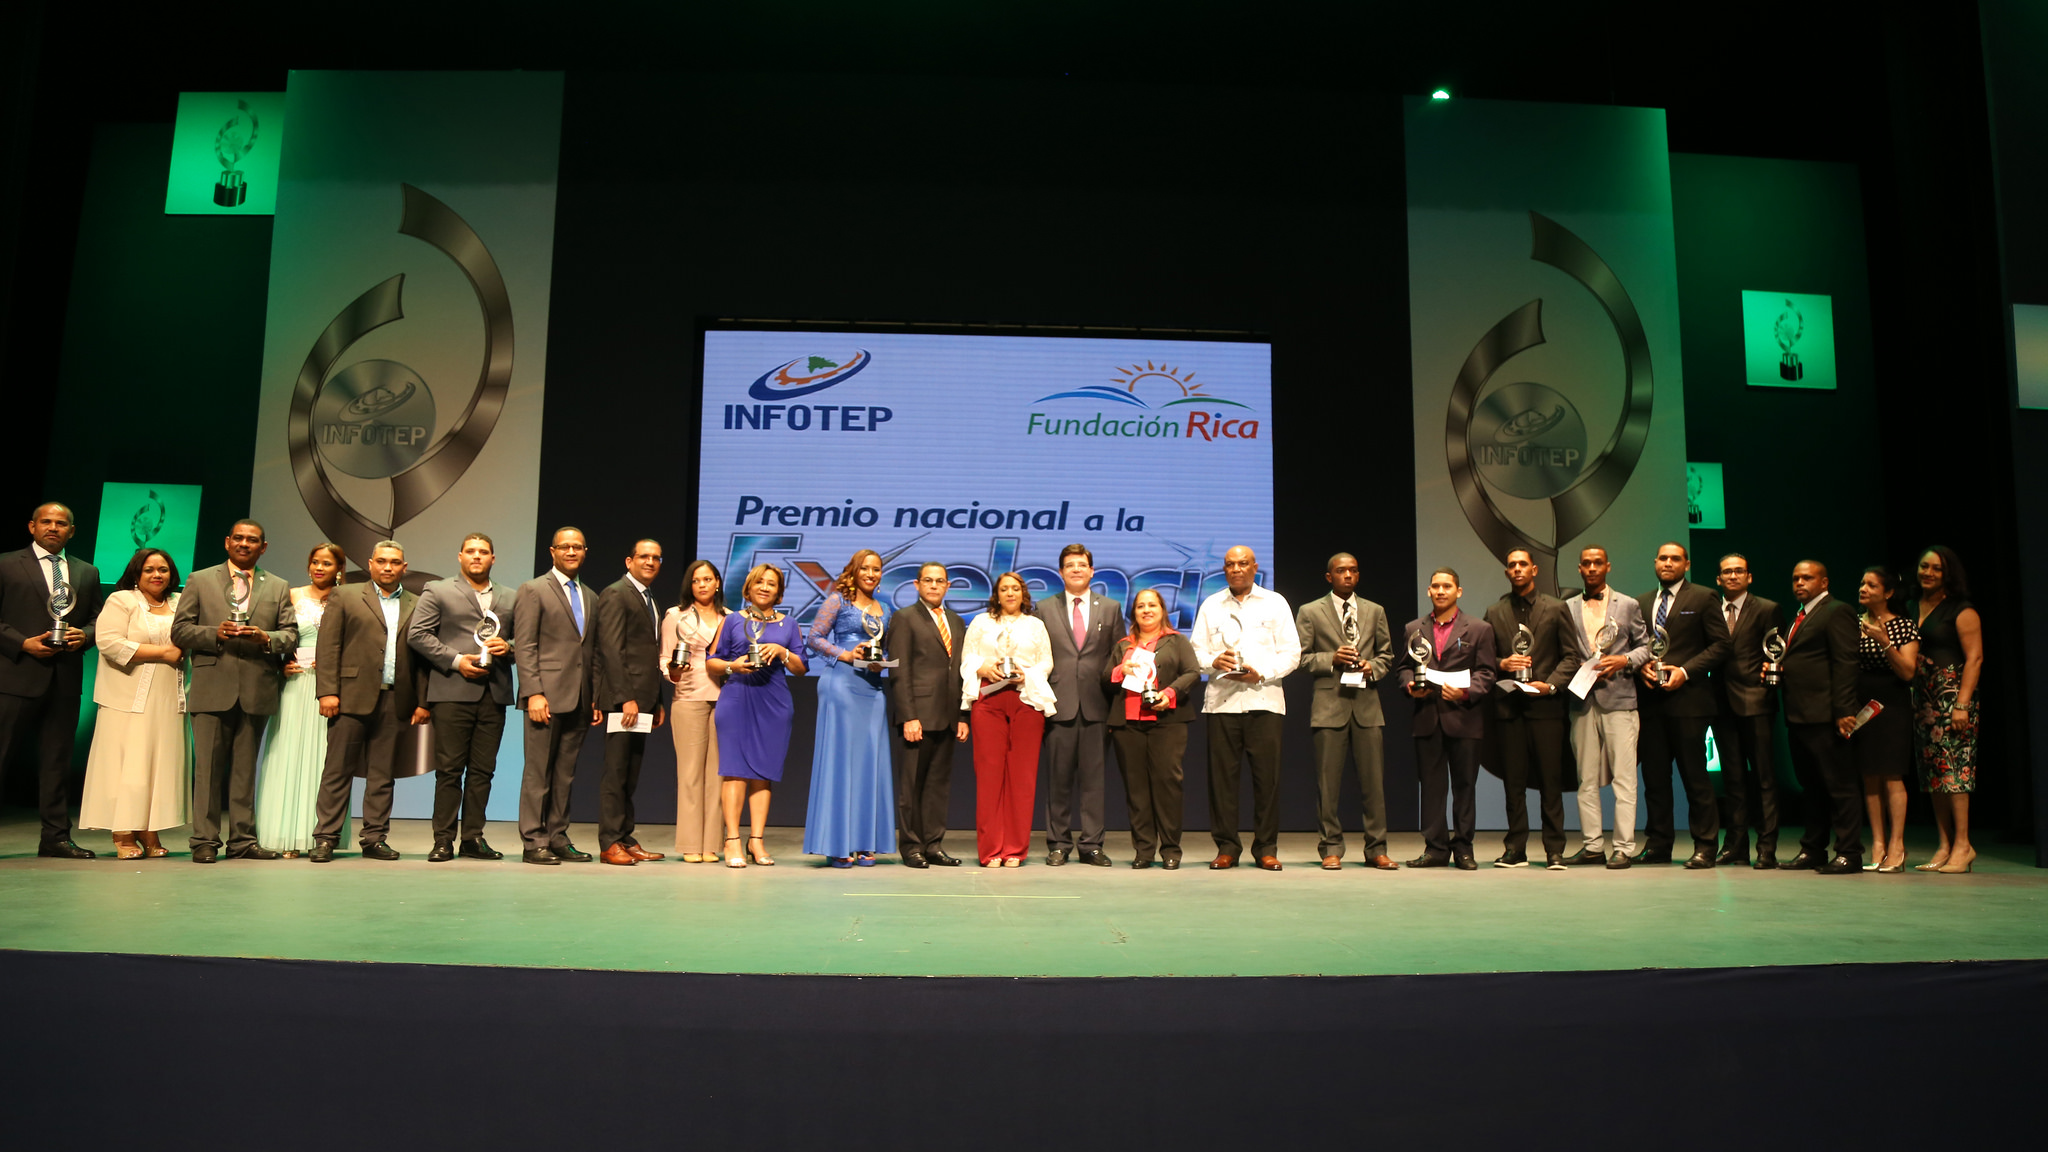 REPÚBLICA DOMINICANA: INFOTEP y Fundación Rica entregan Premio Nacional a la Excelencia de Formación Técnico Profesional